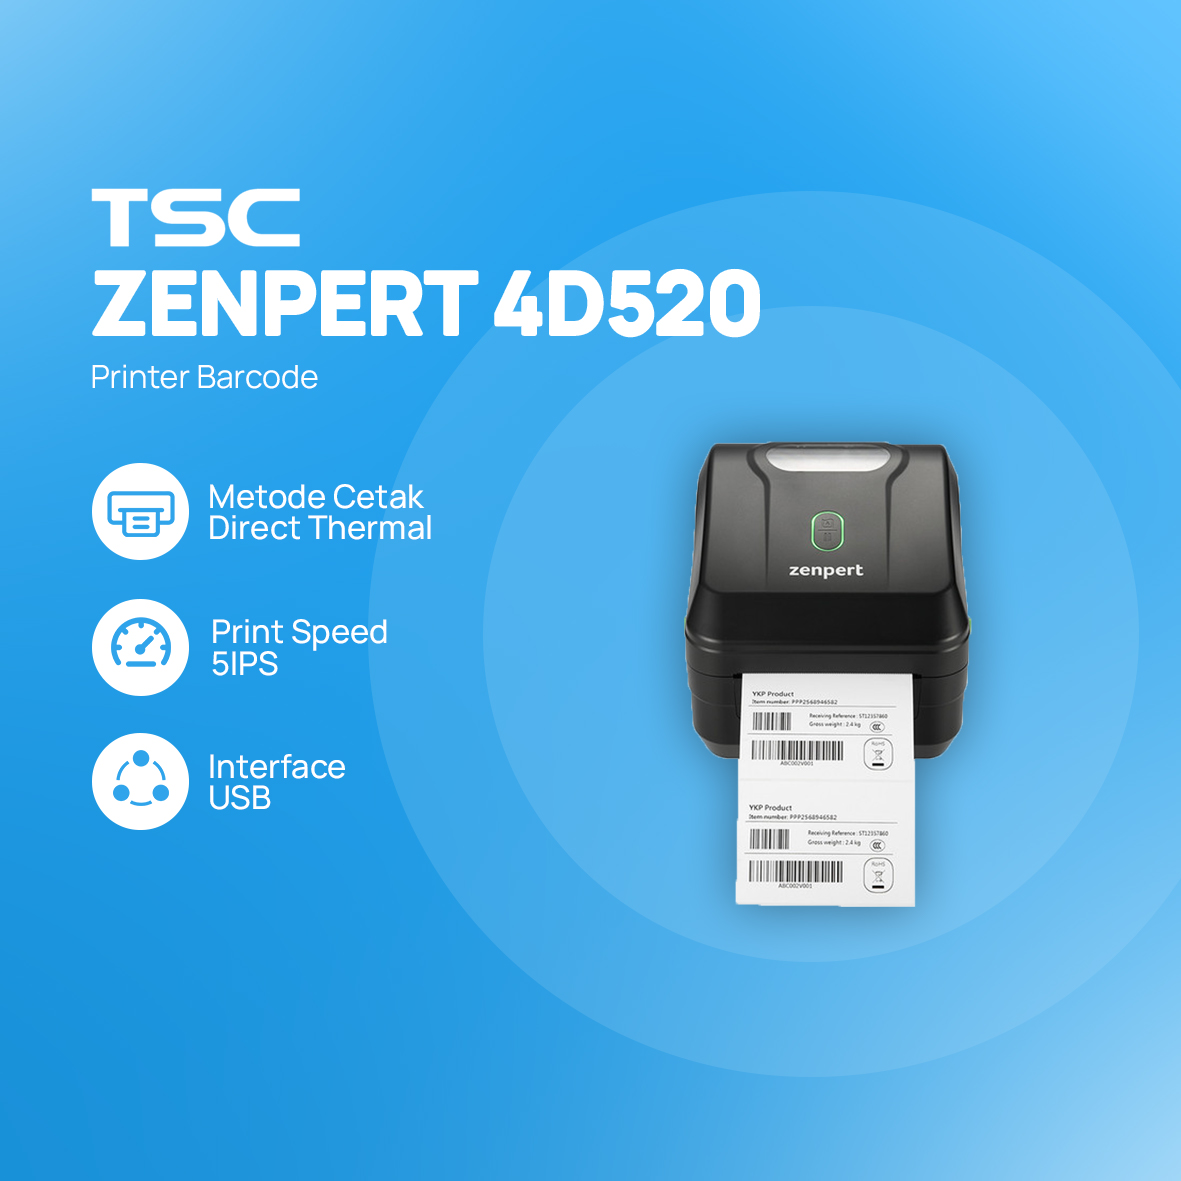 Printer barcode TSC ZENPERT 4D520